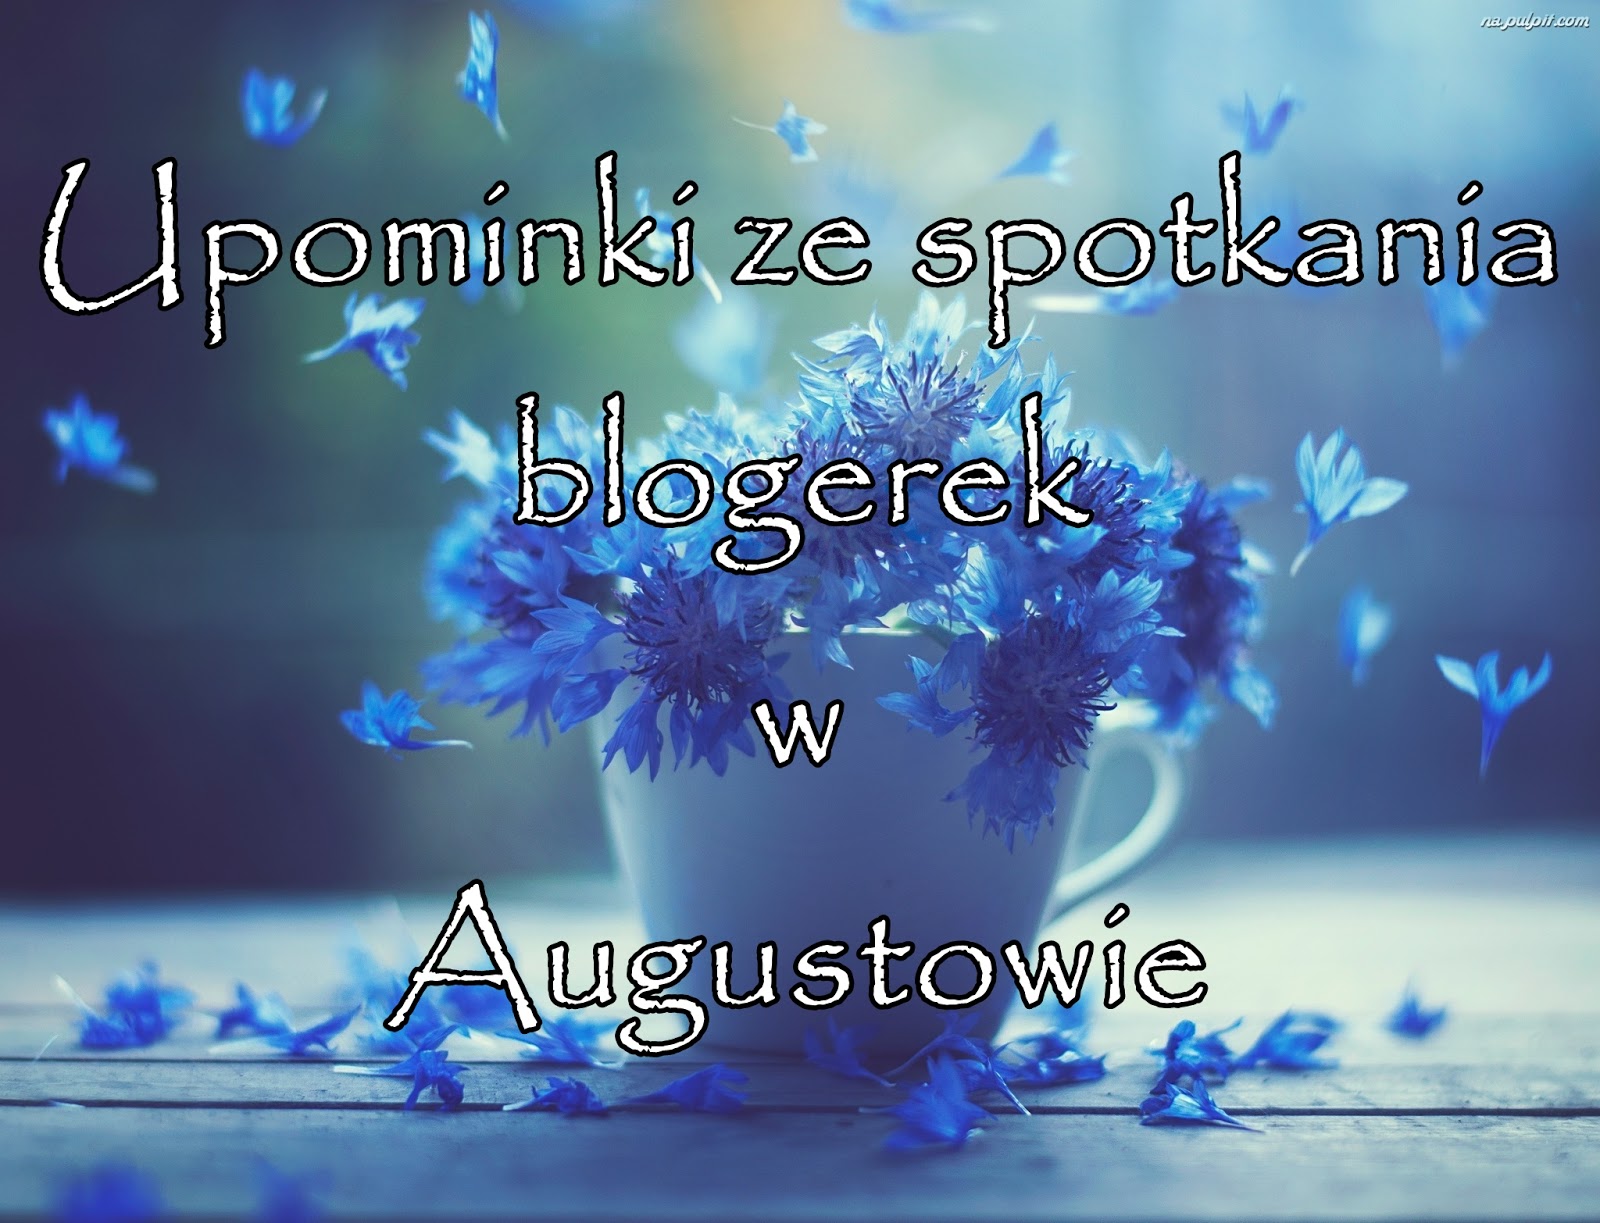 Upominki ze spotkania blogerek w Augustowie | Zuzka Pisze